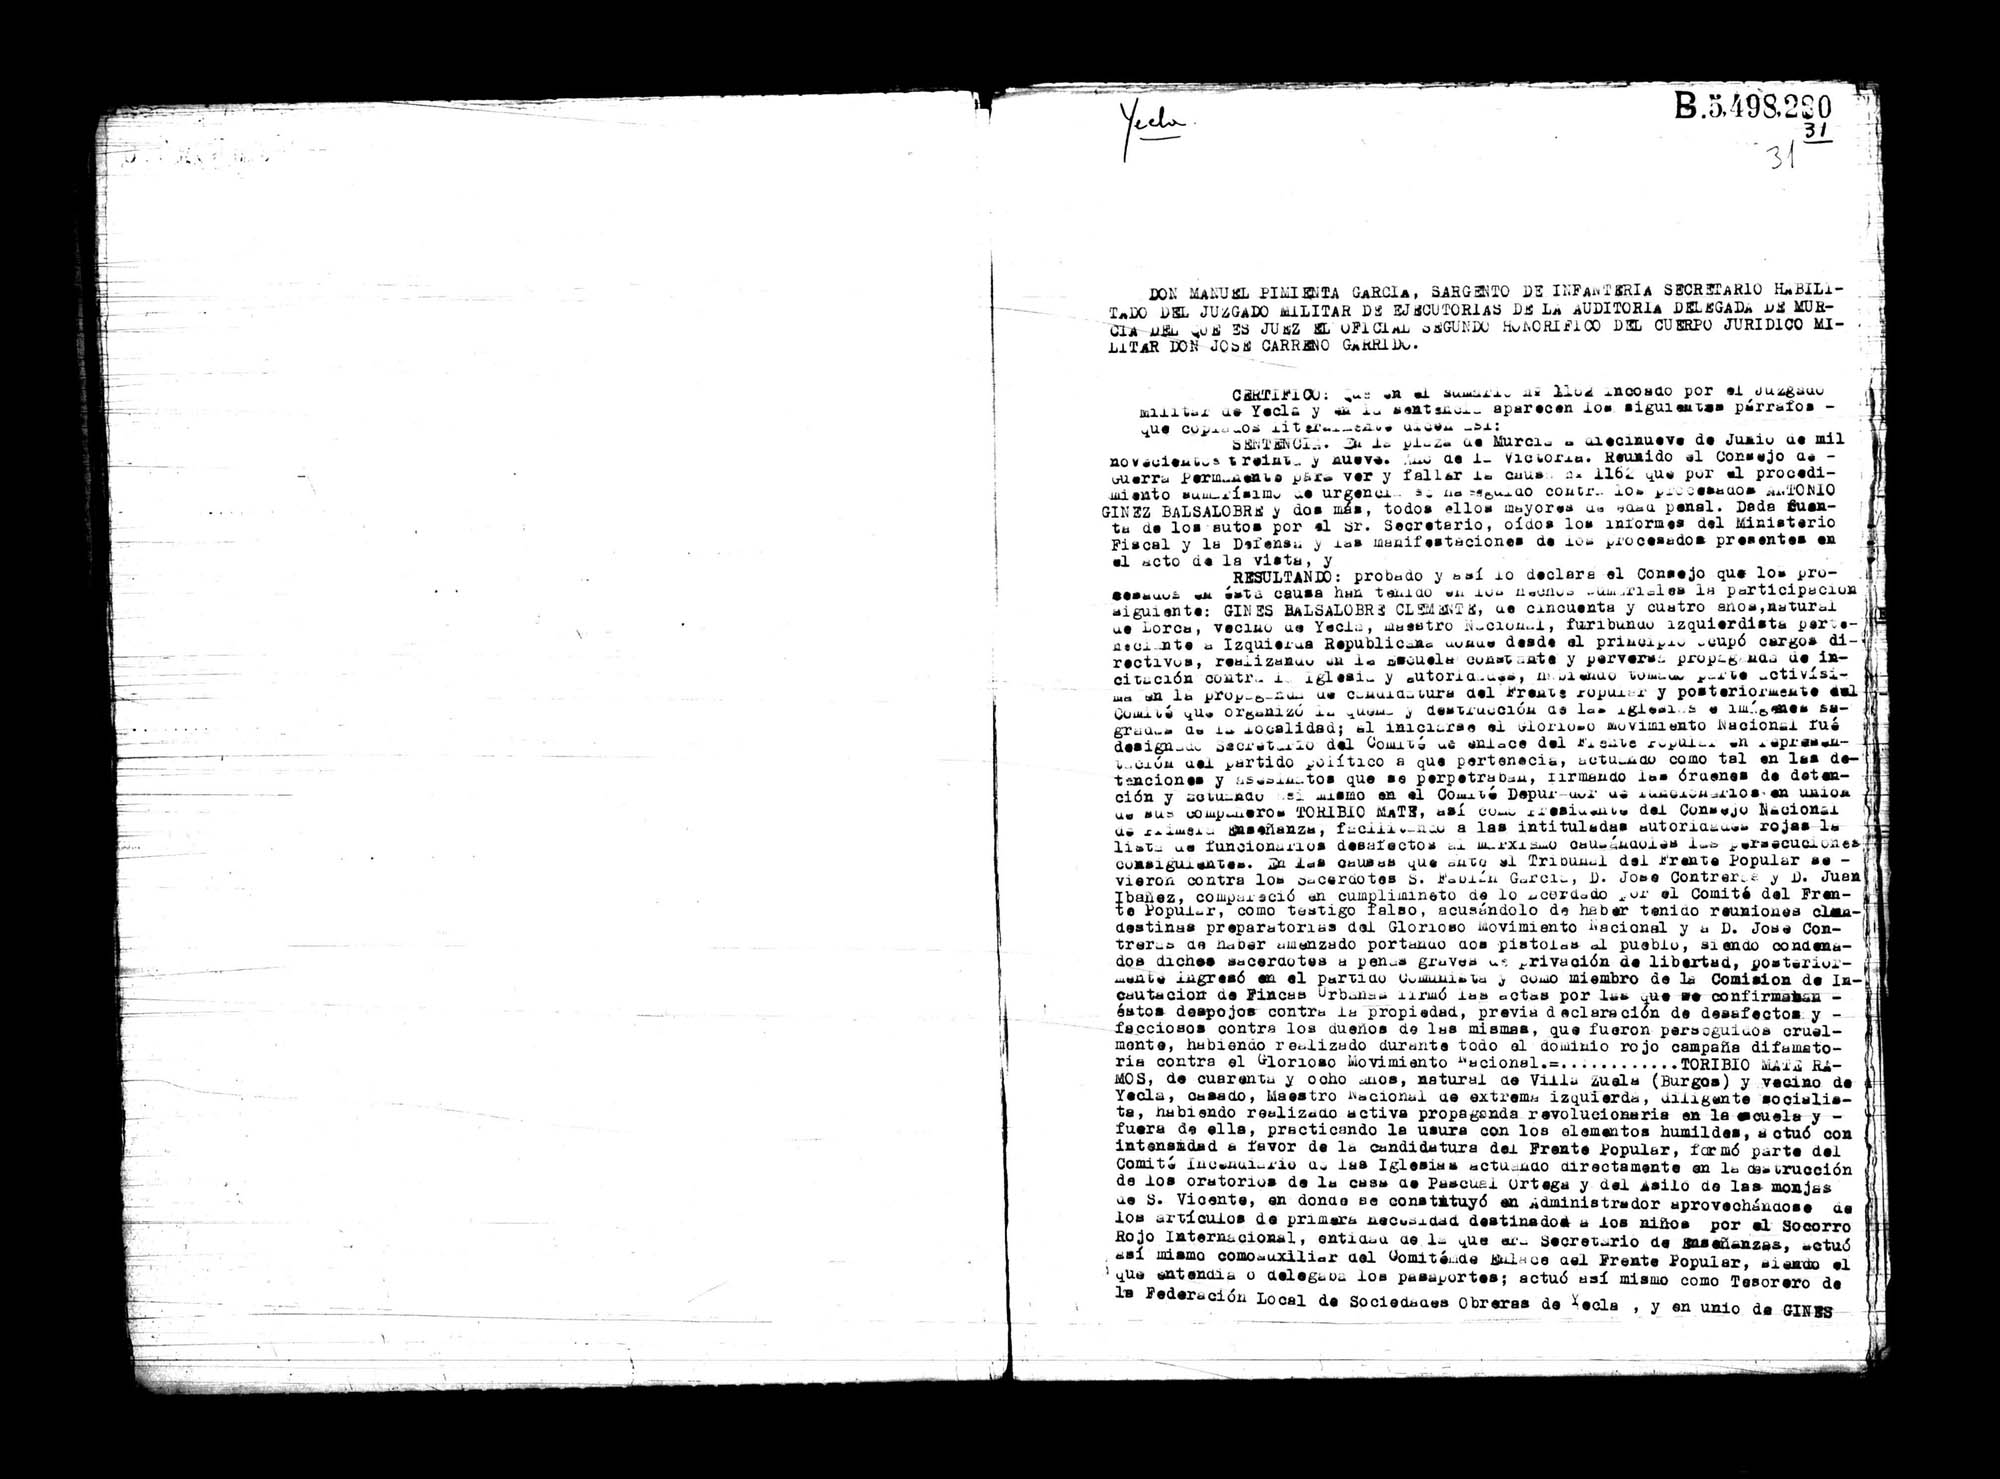 Certificado de la sentencia pronunciada contra Antonio Giner Balsalobre, causa 1162, el 19 de junio de 1939 en Murcia.